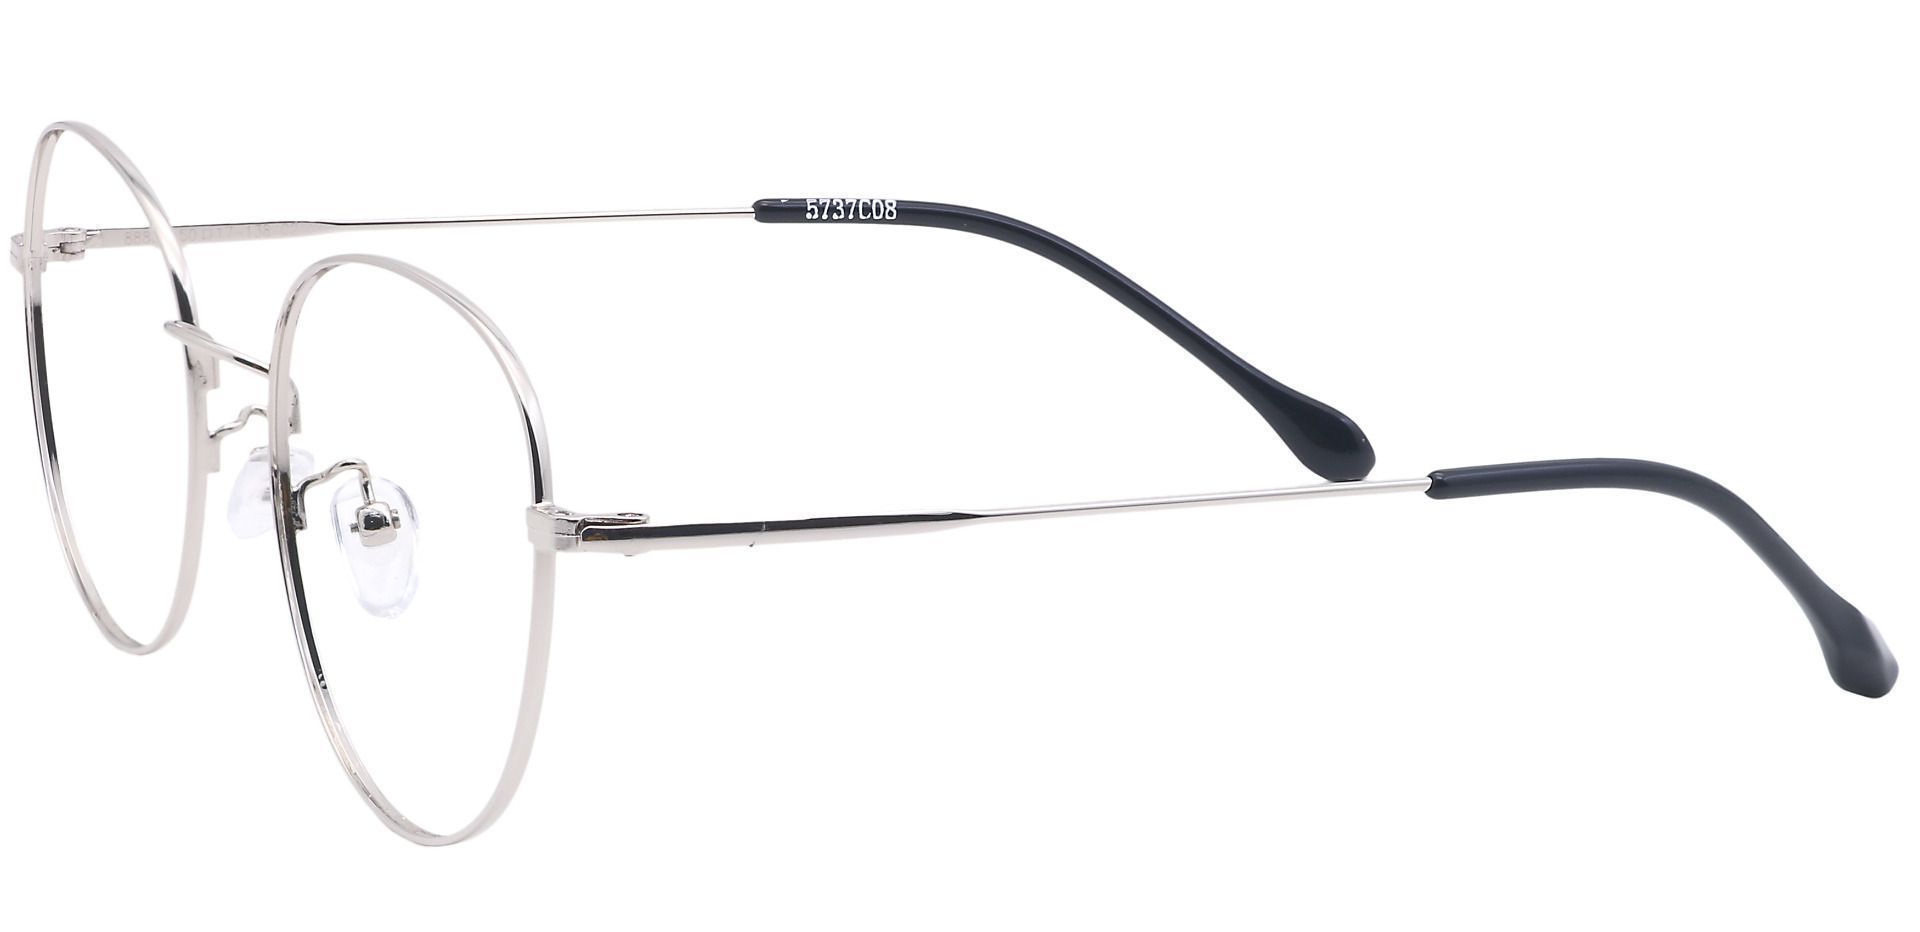 Miller Oval Reading Glasses - Gray